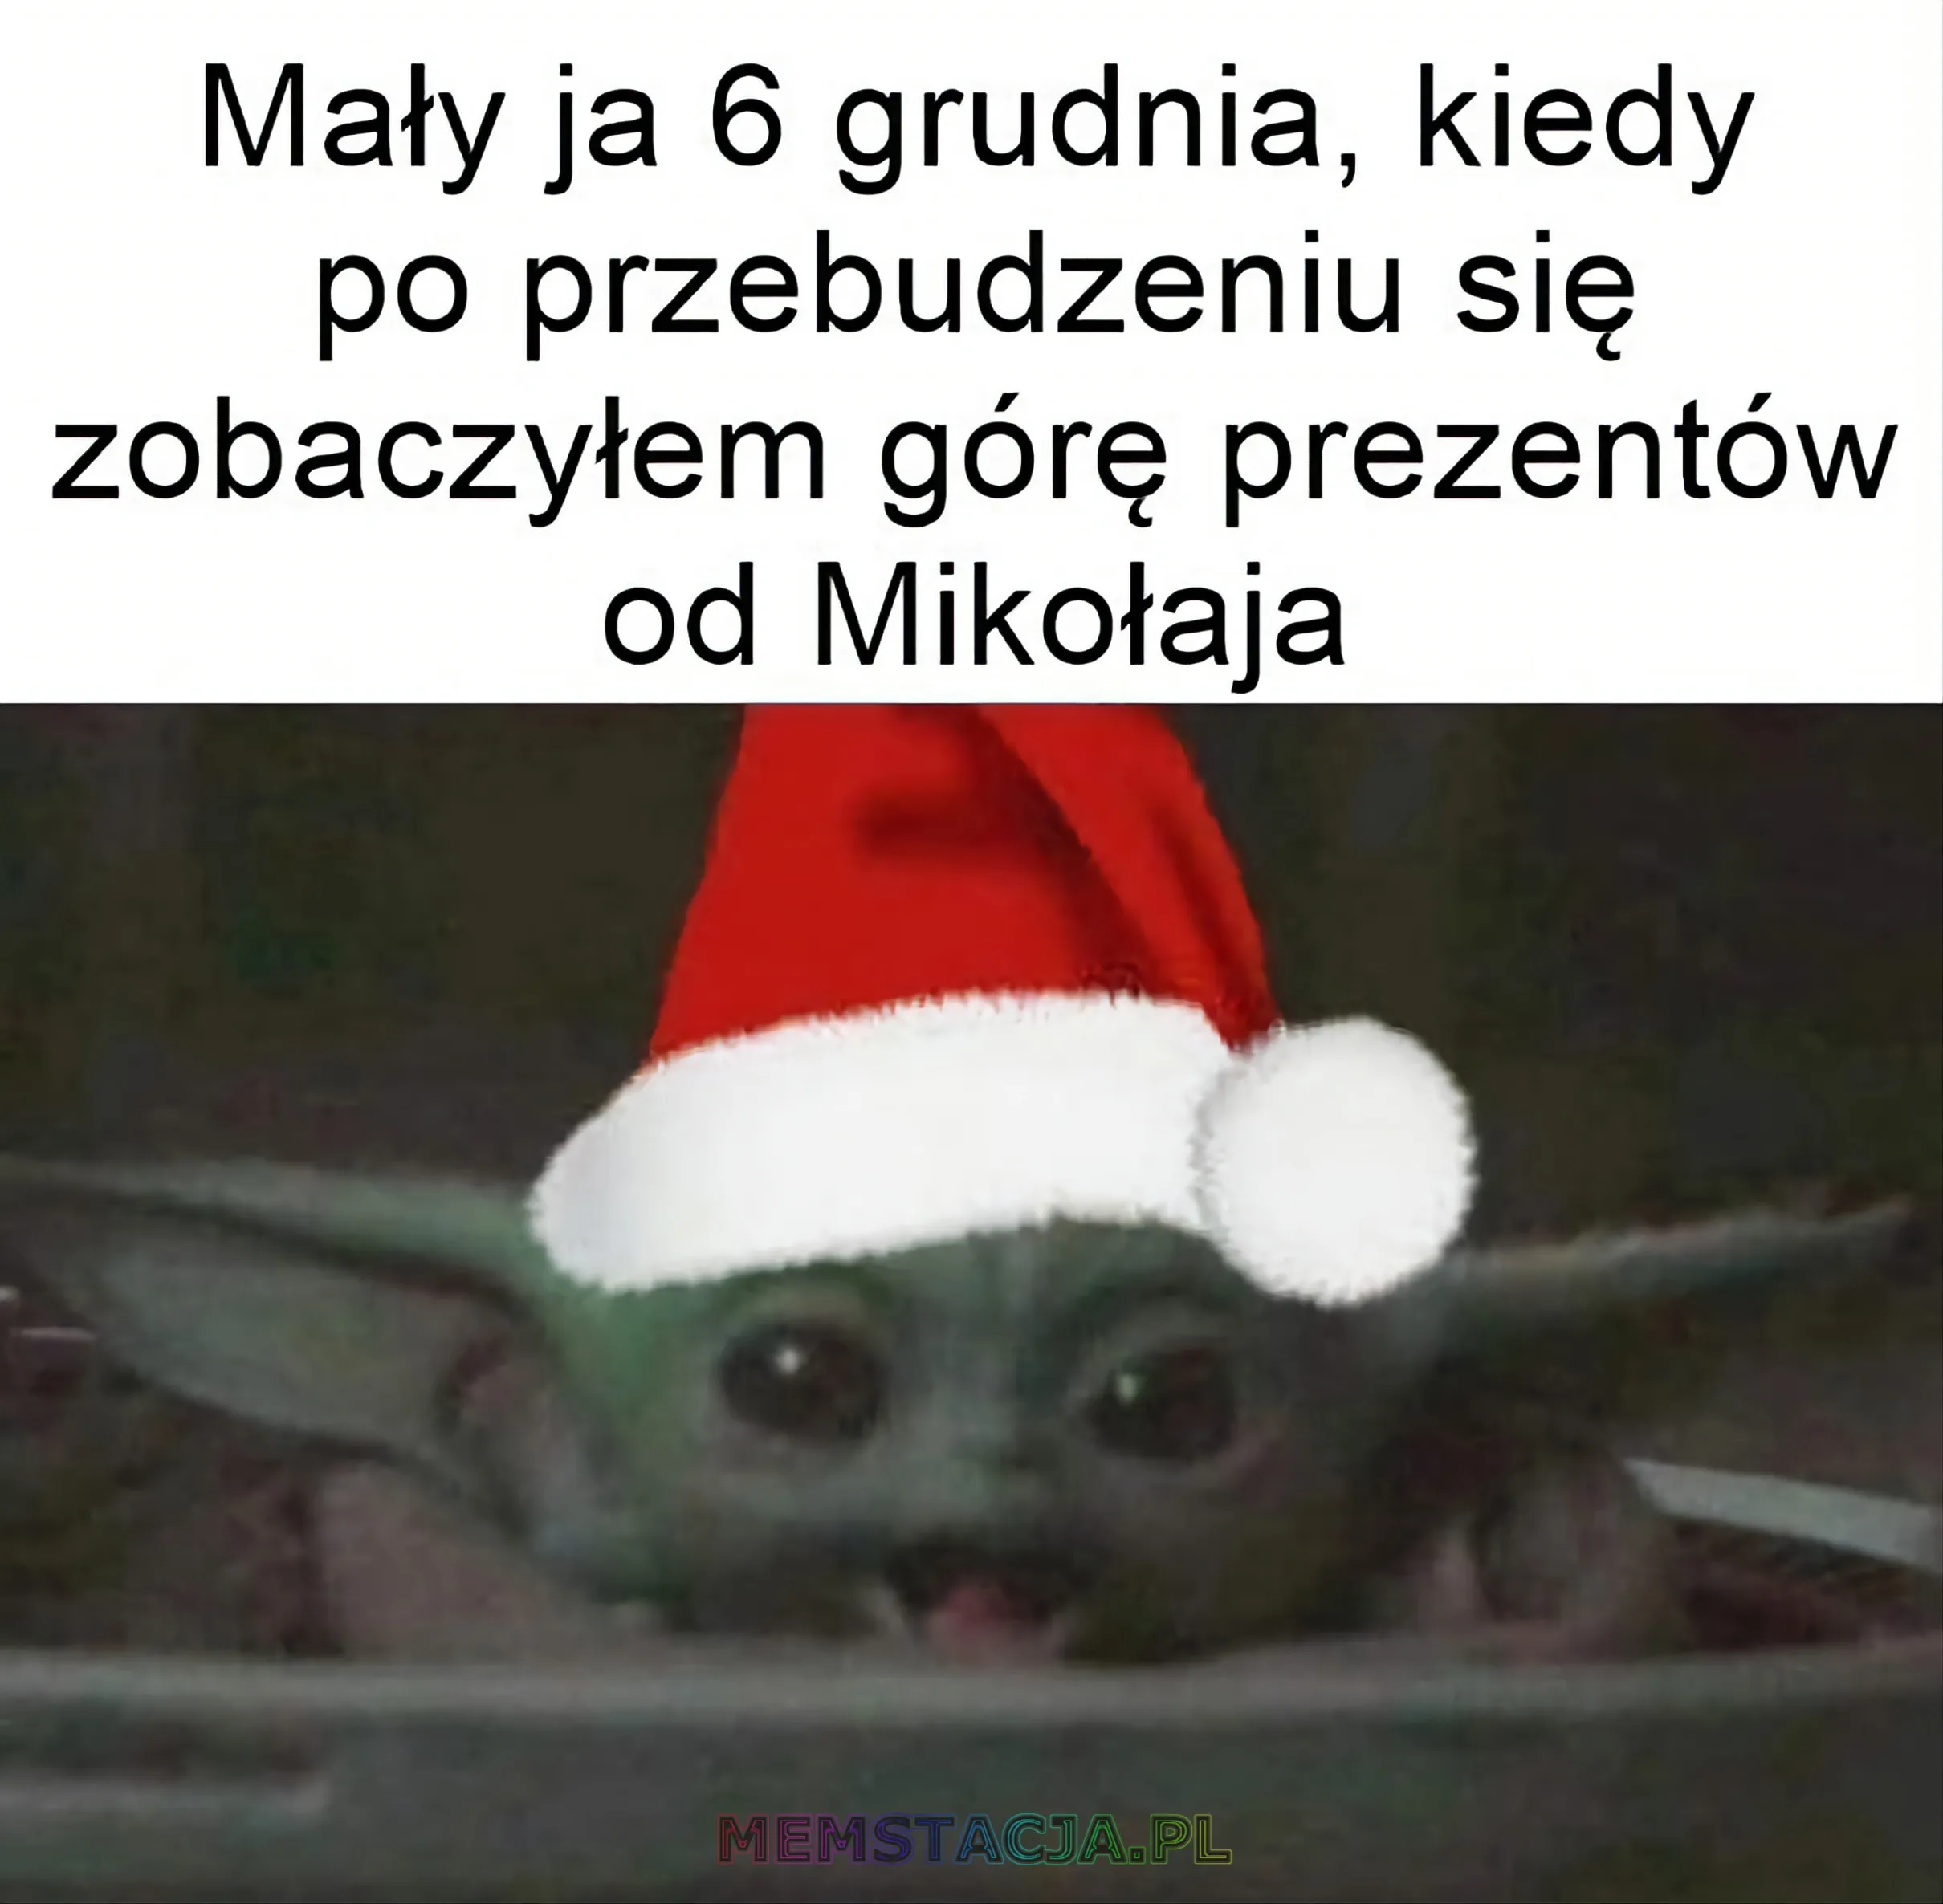 Mem z uśmiechniętą postacią, w czapce Mikołaja: 'Mały ja 6 grudnia, kiedy po przebudzeniu się zobaczyłem górę prezentów od Mikołaja'